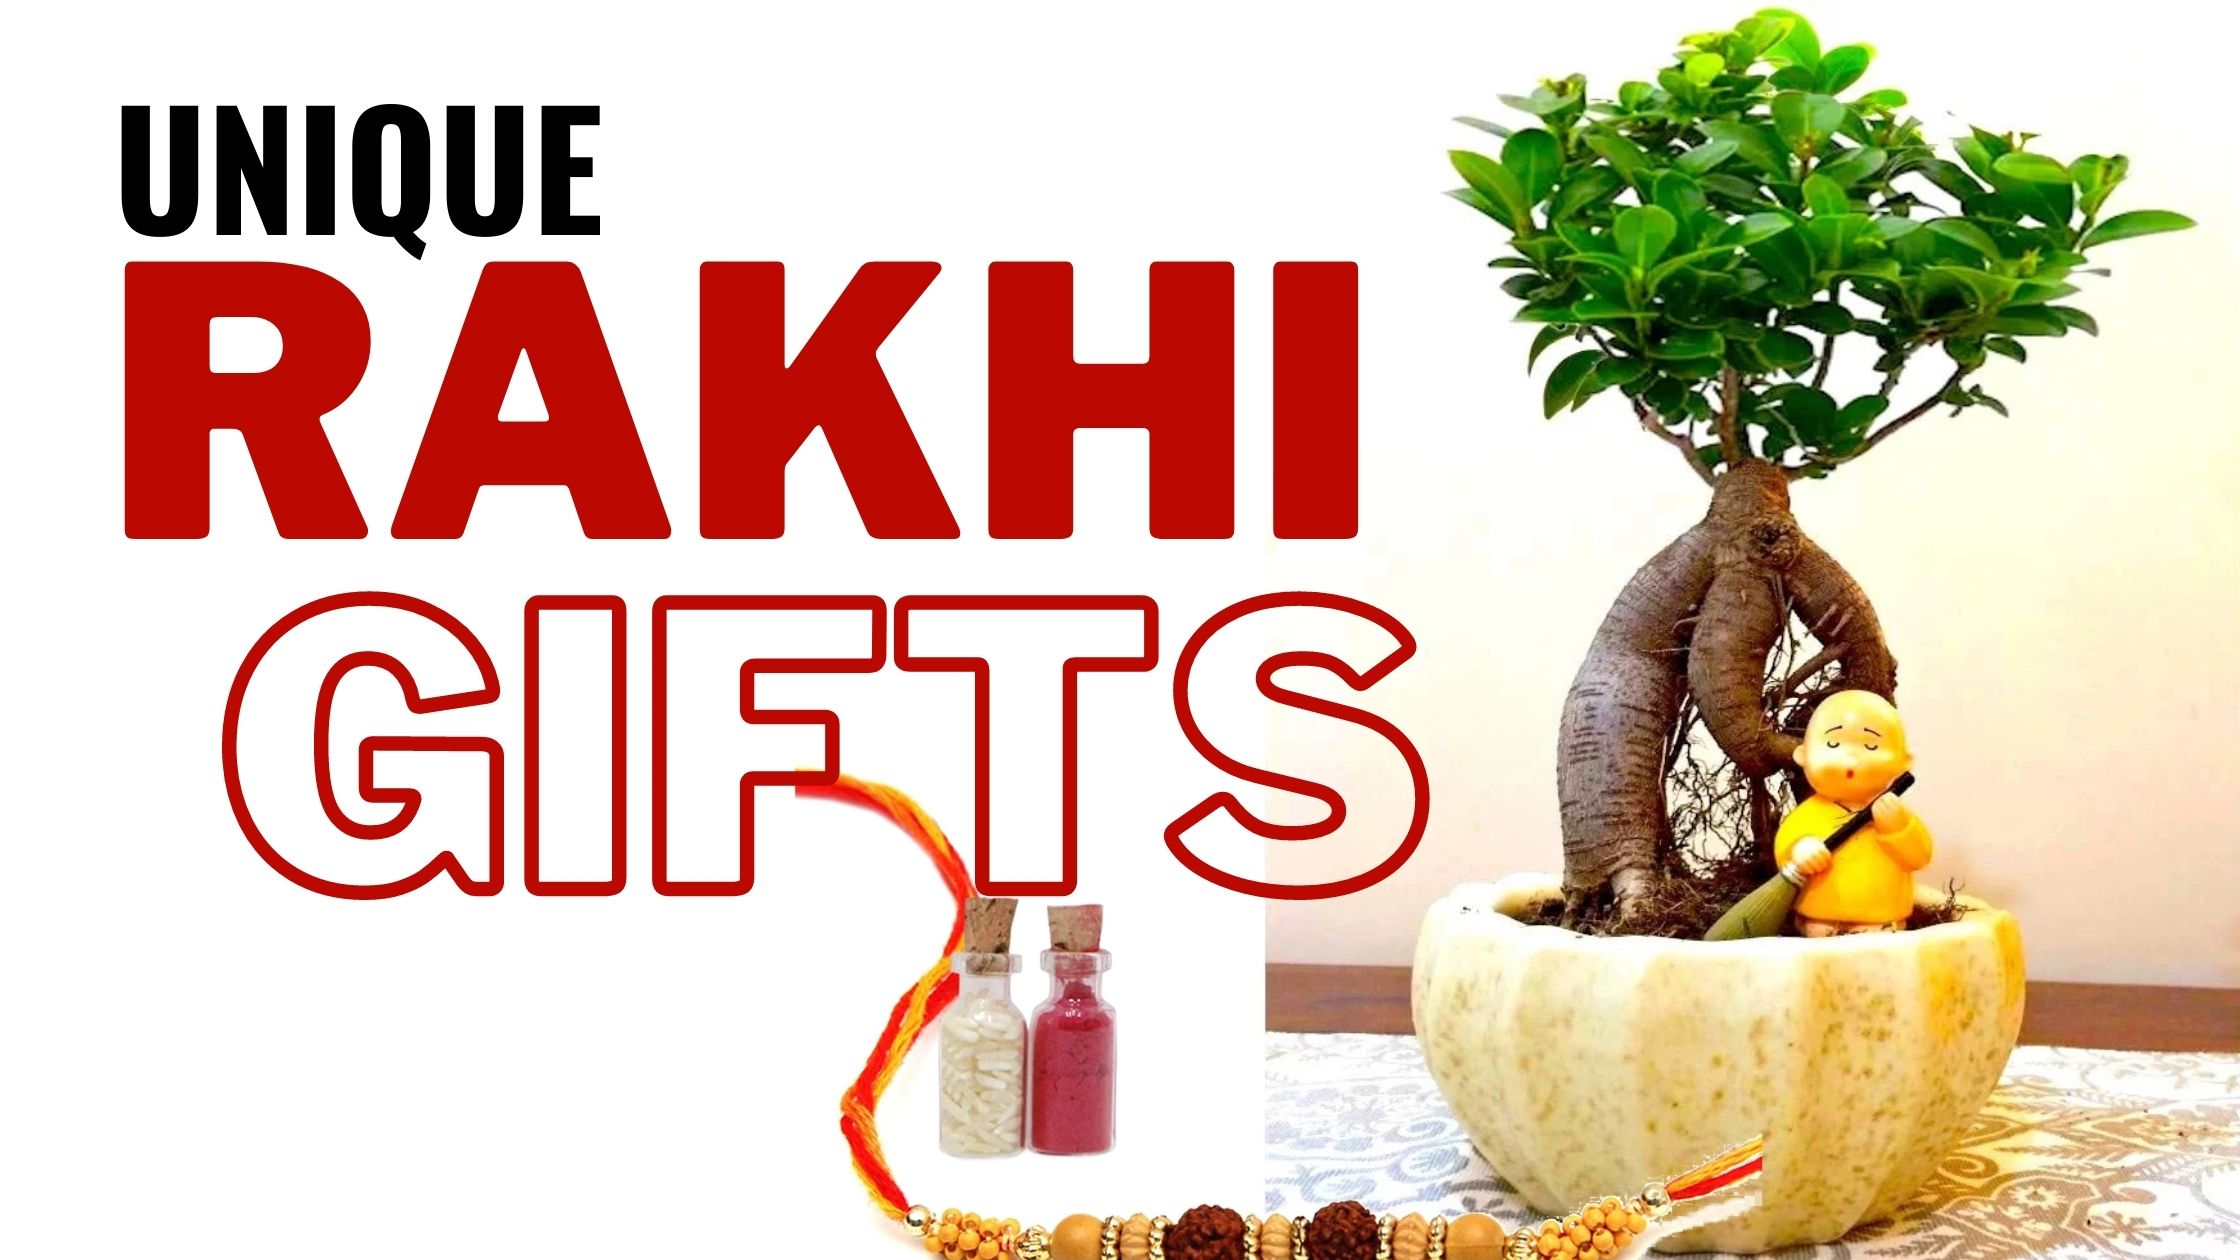 Rakhi Gift Ideas for Sister | Raksha Bandhan Gift Ideas | The Gourmet Box